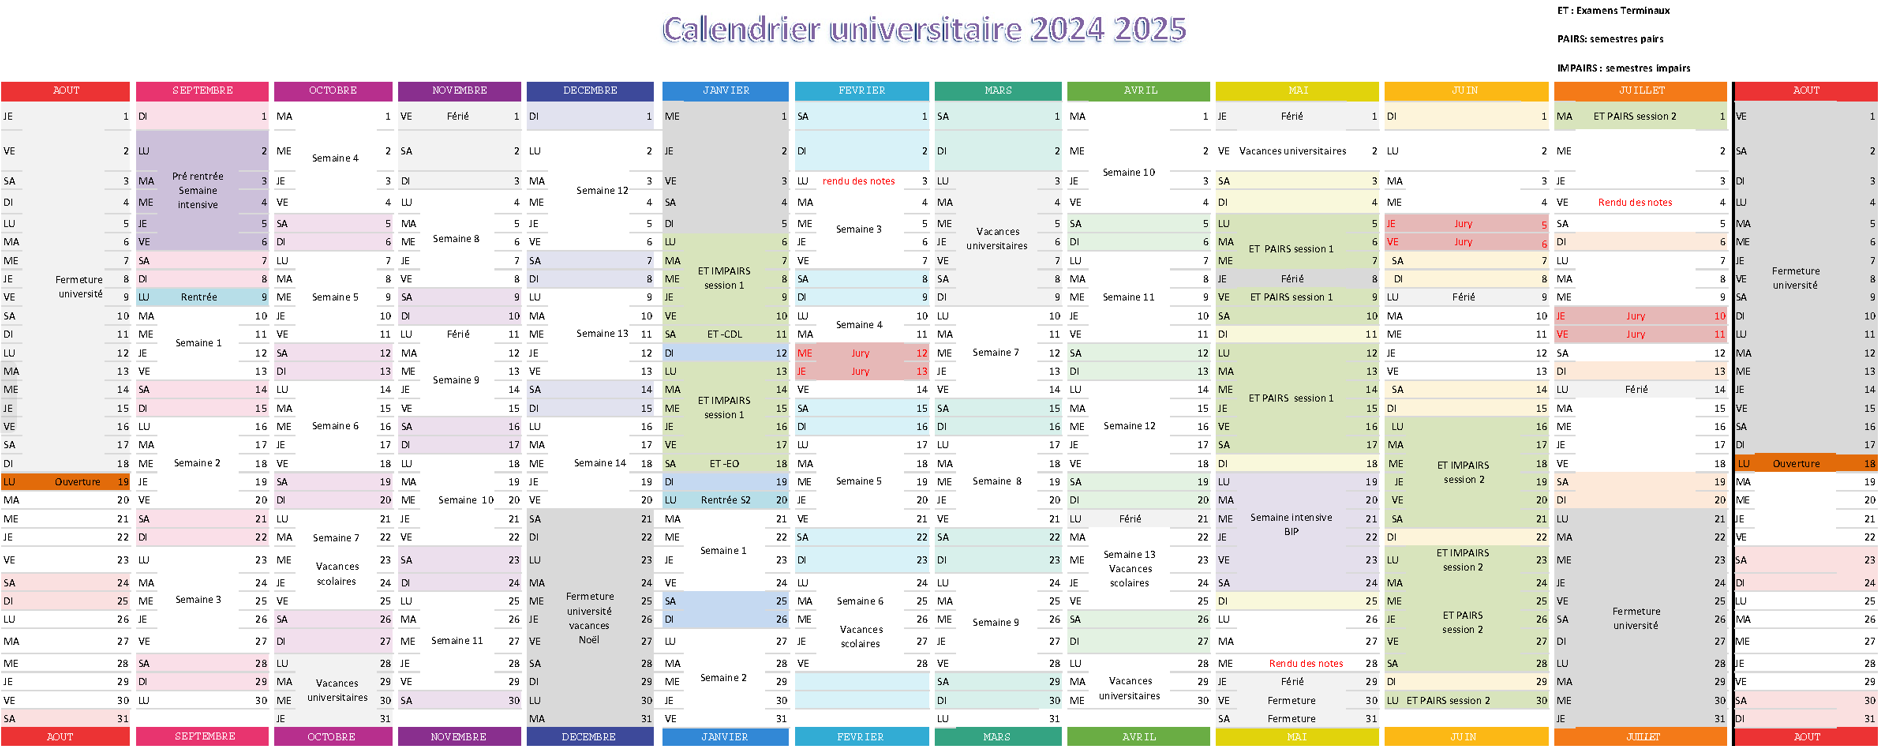 Calendrier universitaire 2024-2025